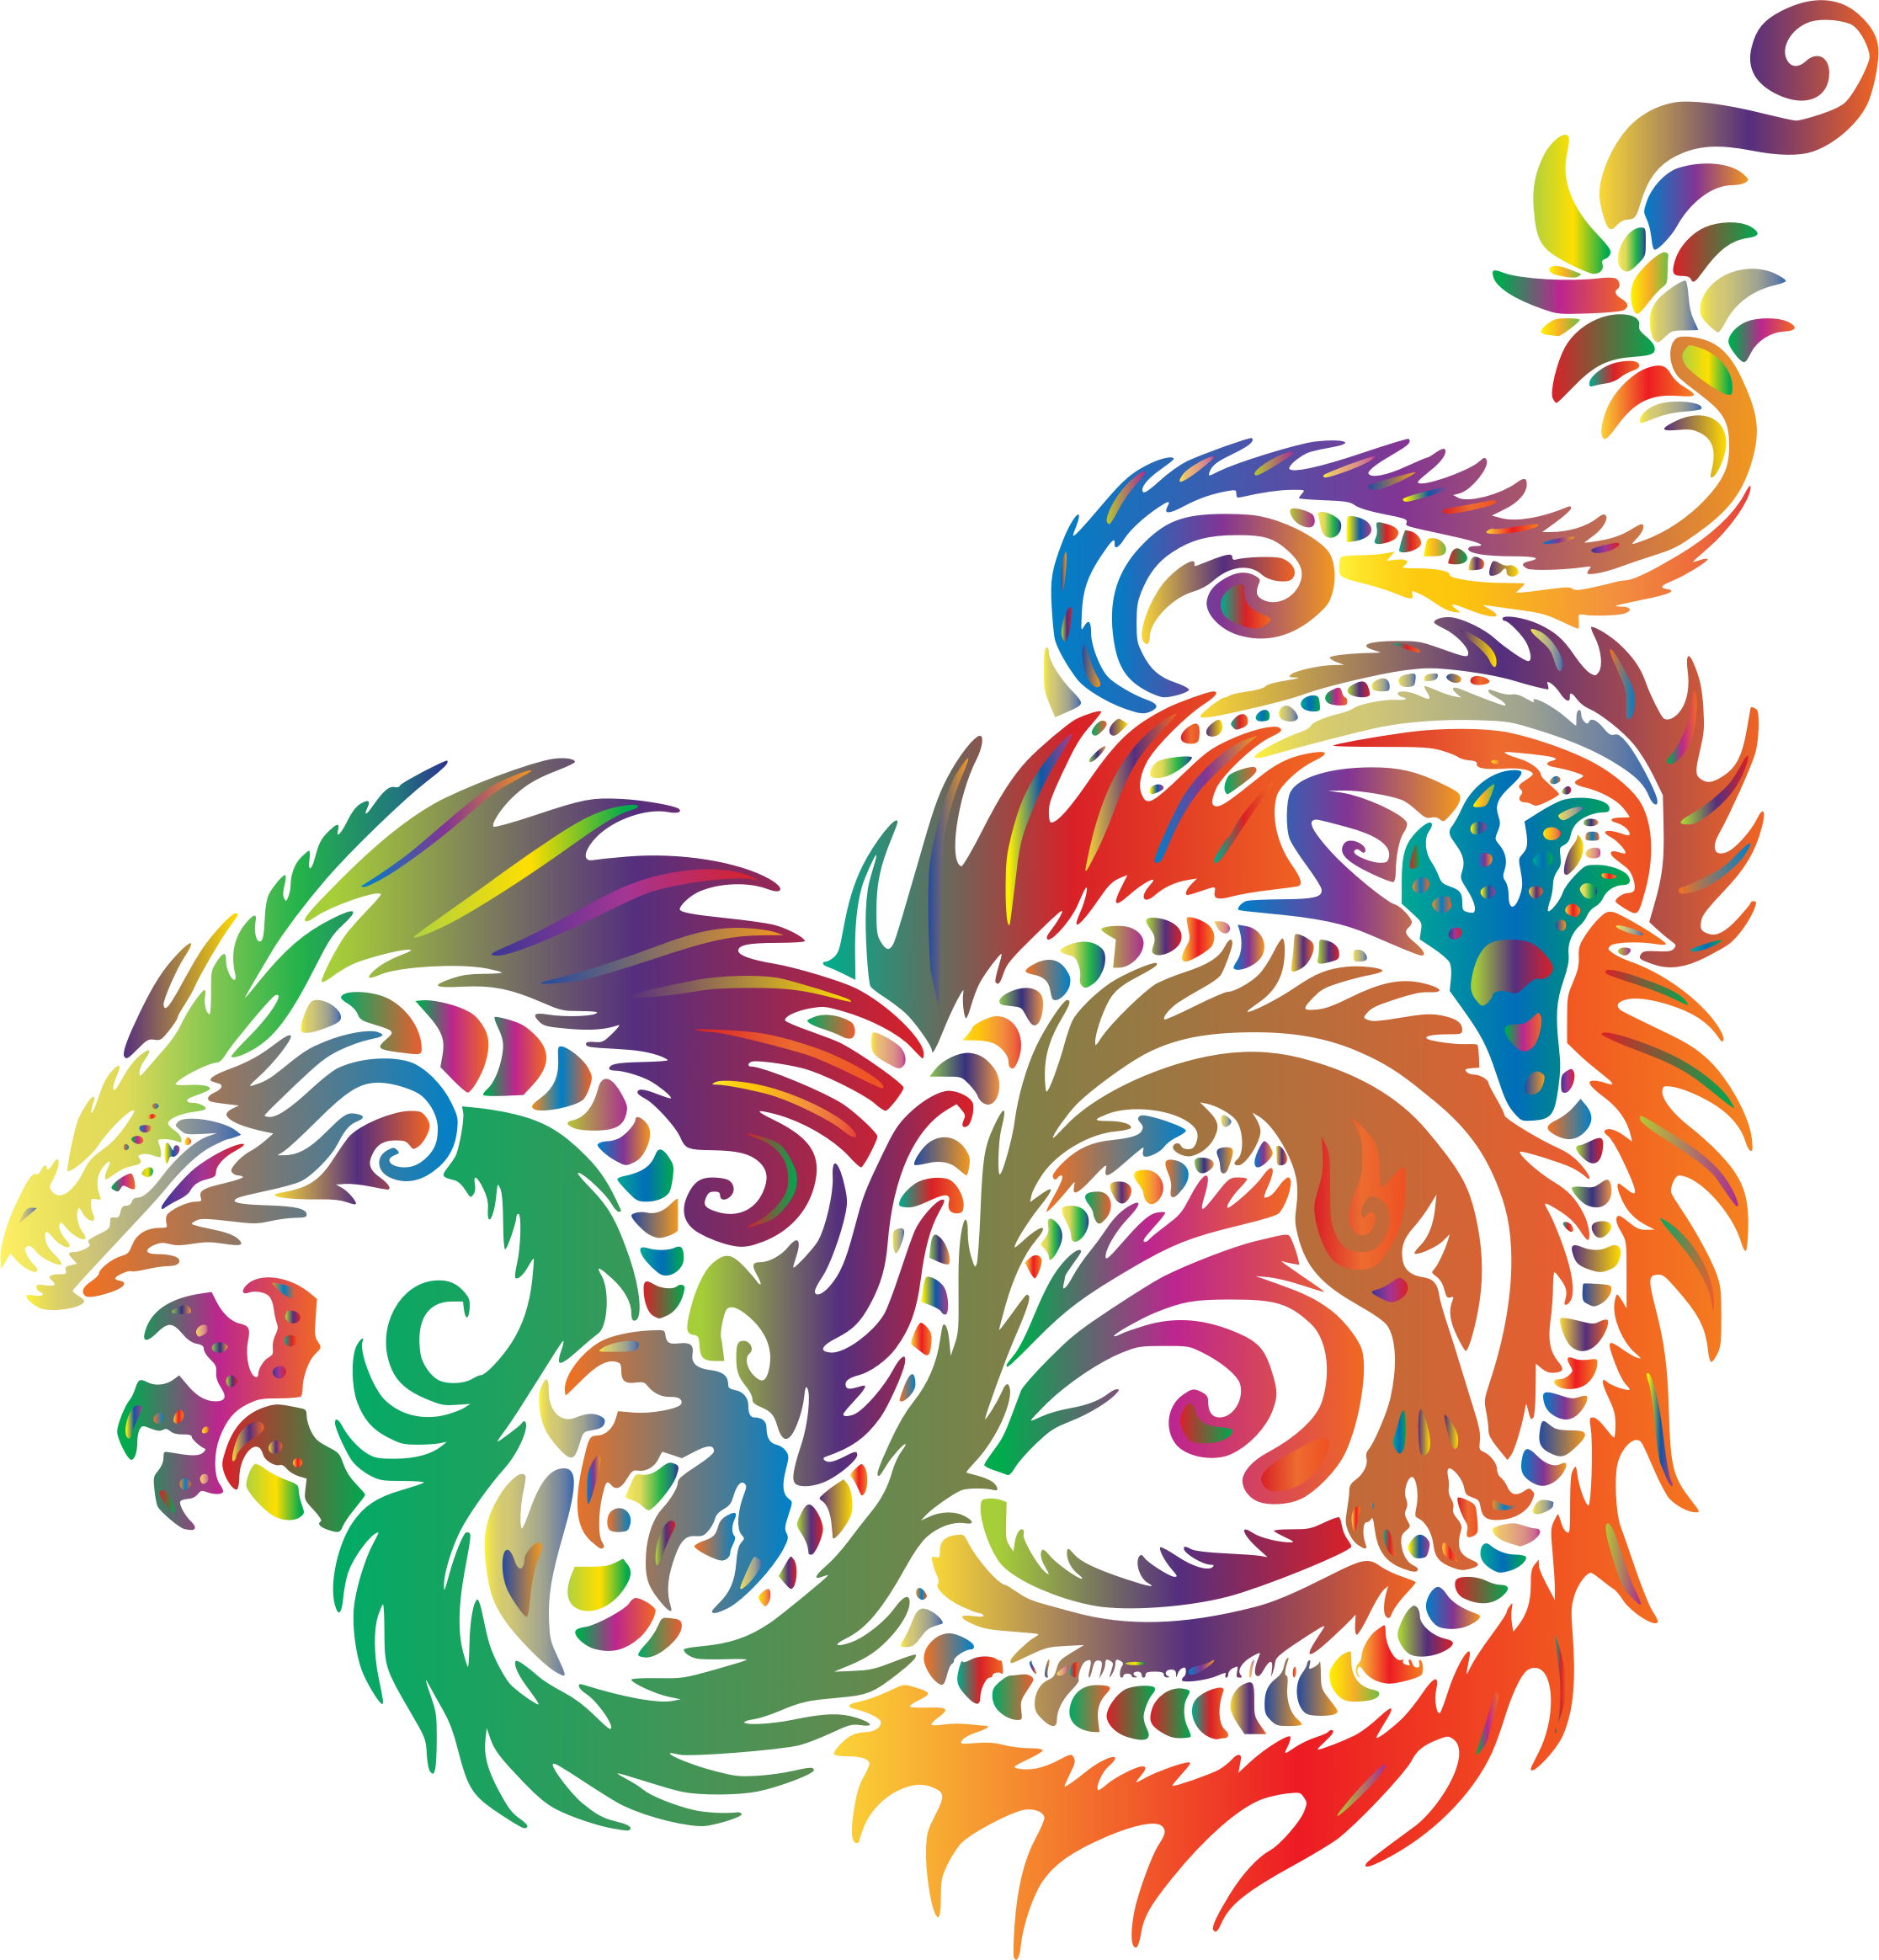 Colored prismatic dragon.